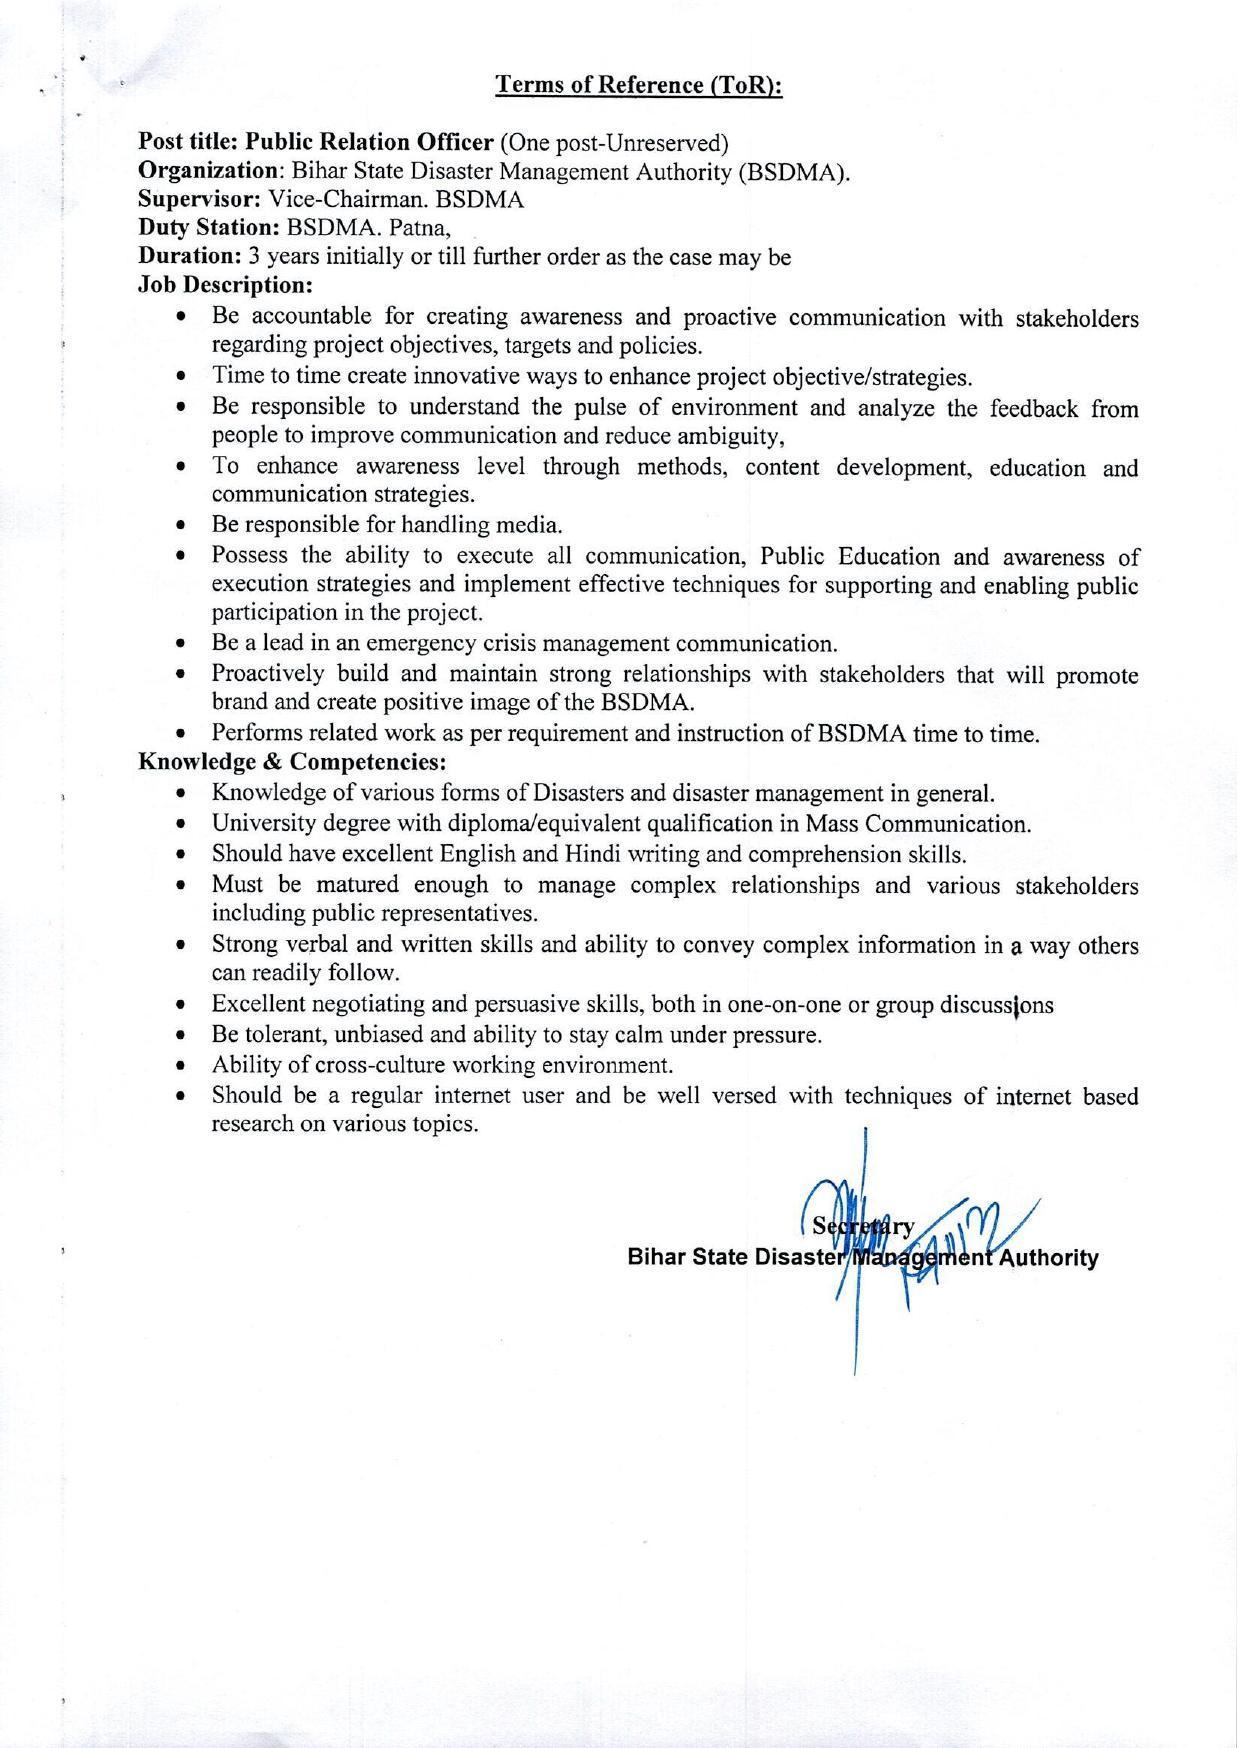 BSDMA Invites Application for Senior Advisor, Public Relation Officer Recruitment 2022 - Page 7